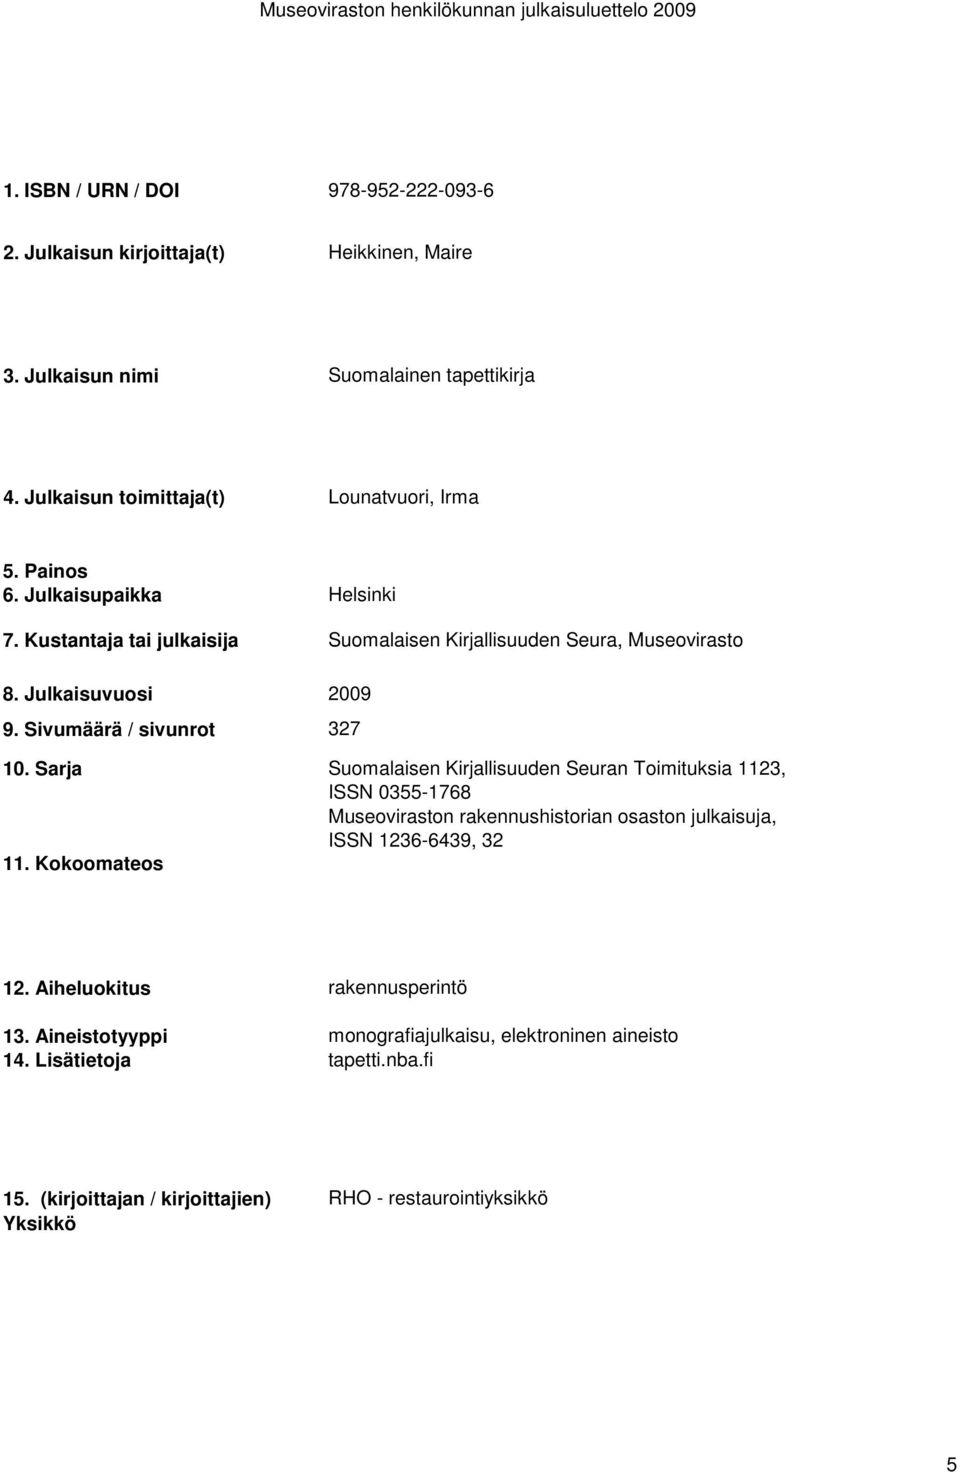 Toimituksia 1123, ISSN 0355-1768 Museoviraston rakennushistorian osaston julkaisuja, ISSN